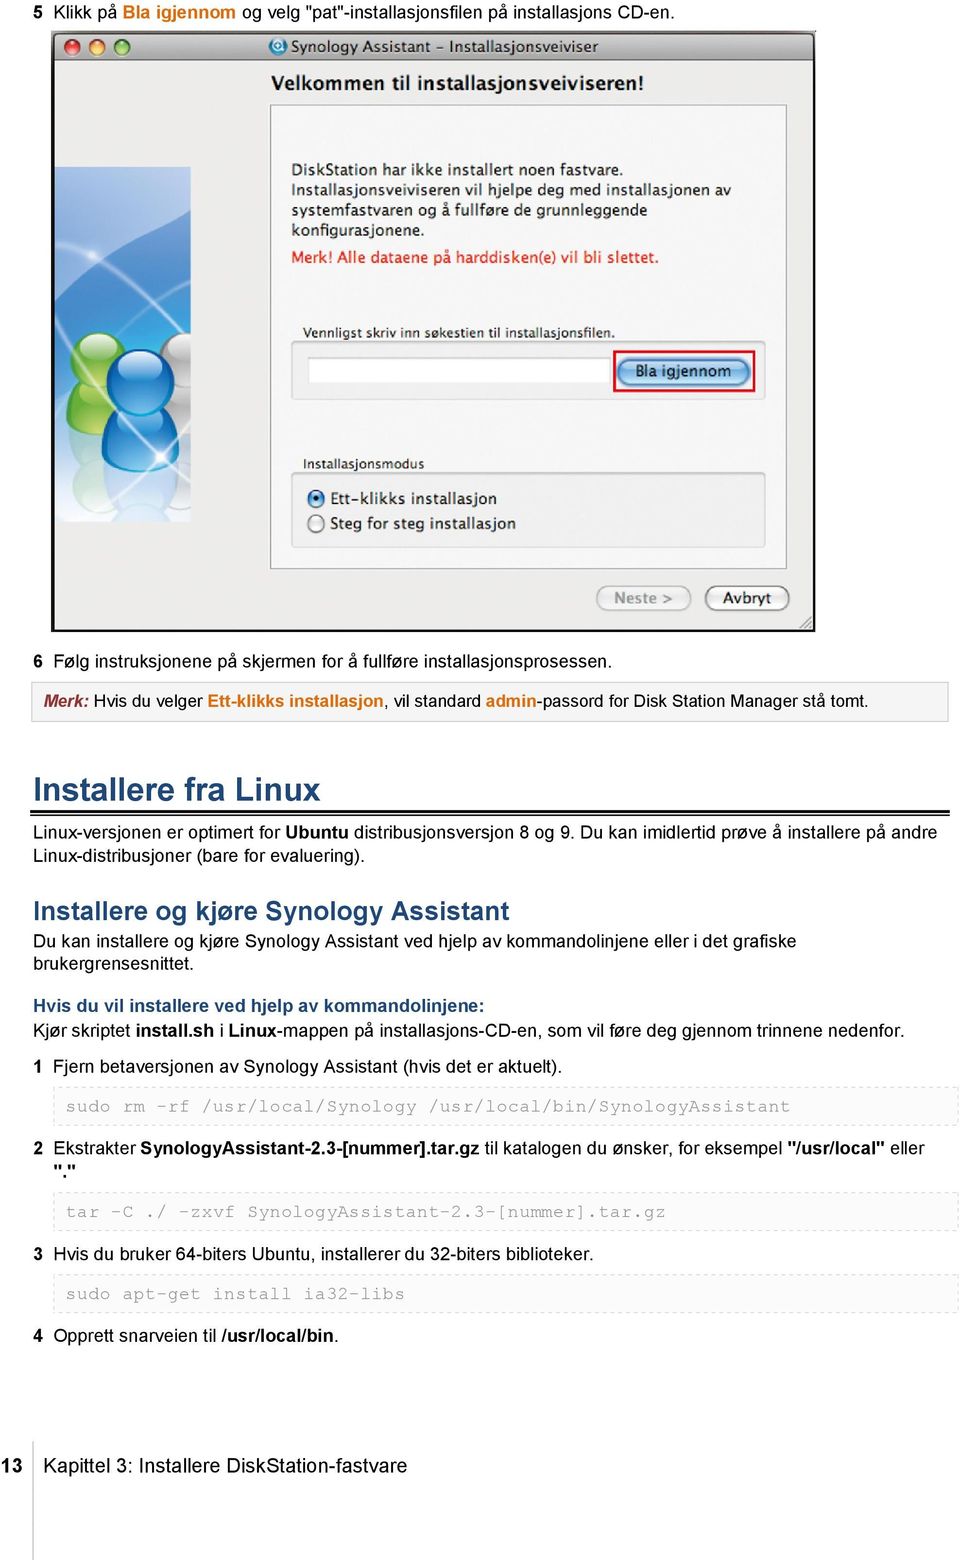 Du kan imidlertid prøve å installere på andre Linux-distribusjoner (bare for evaluering).